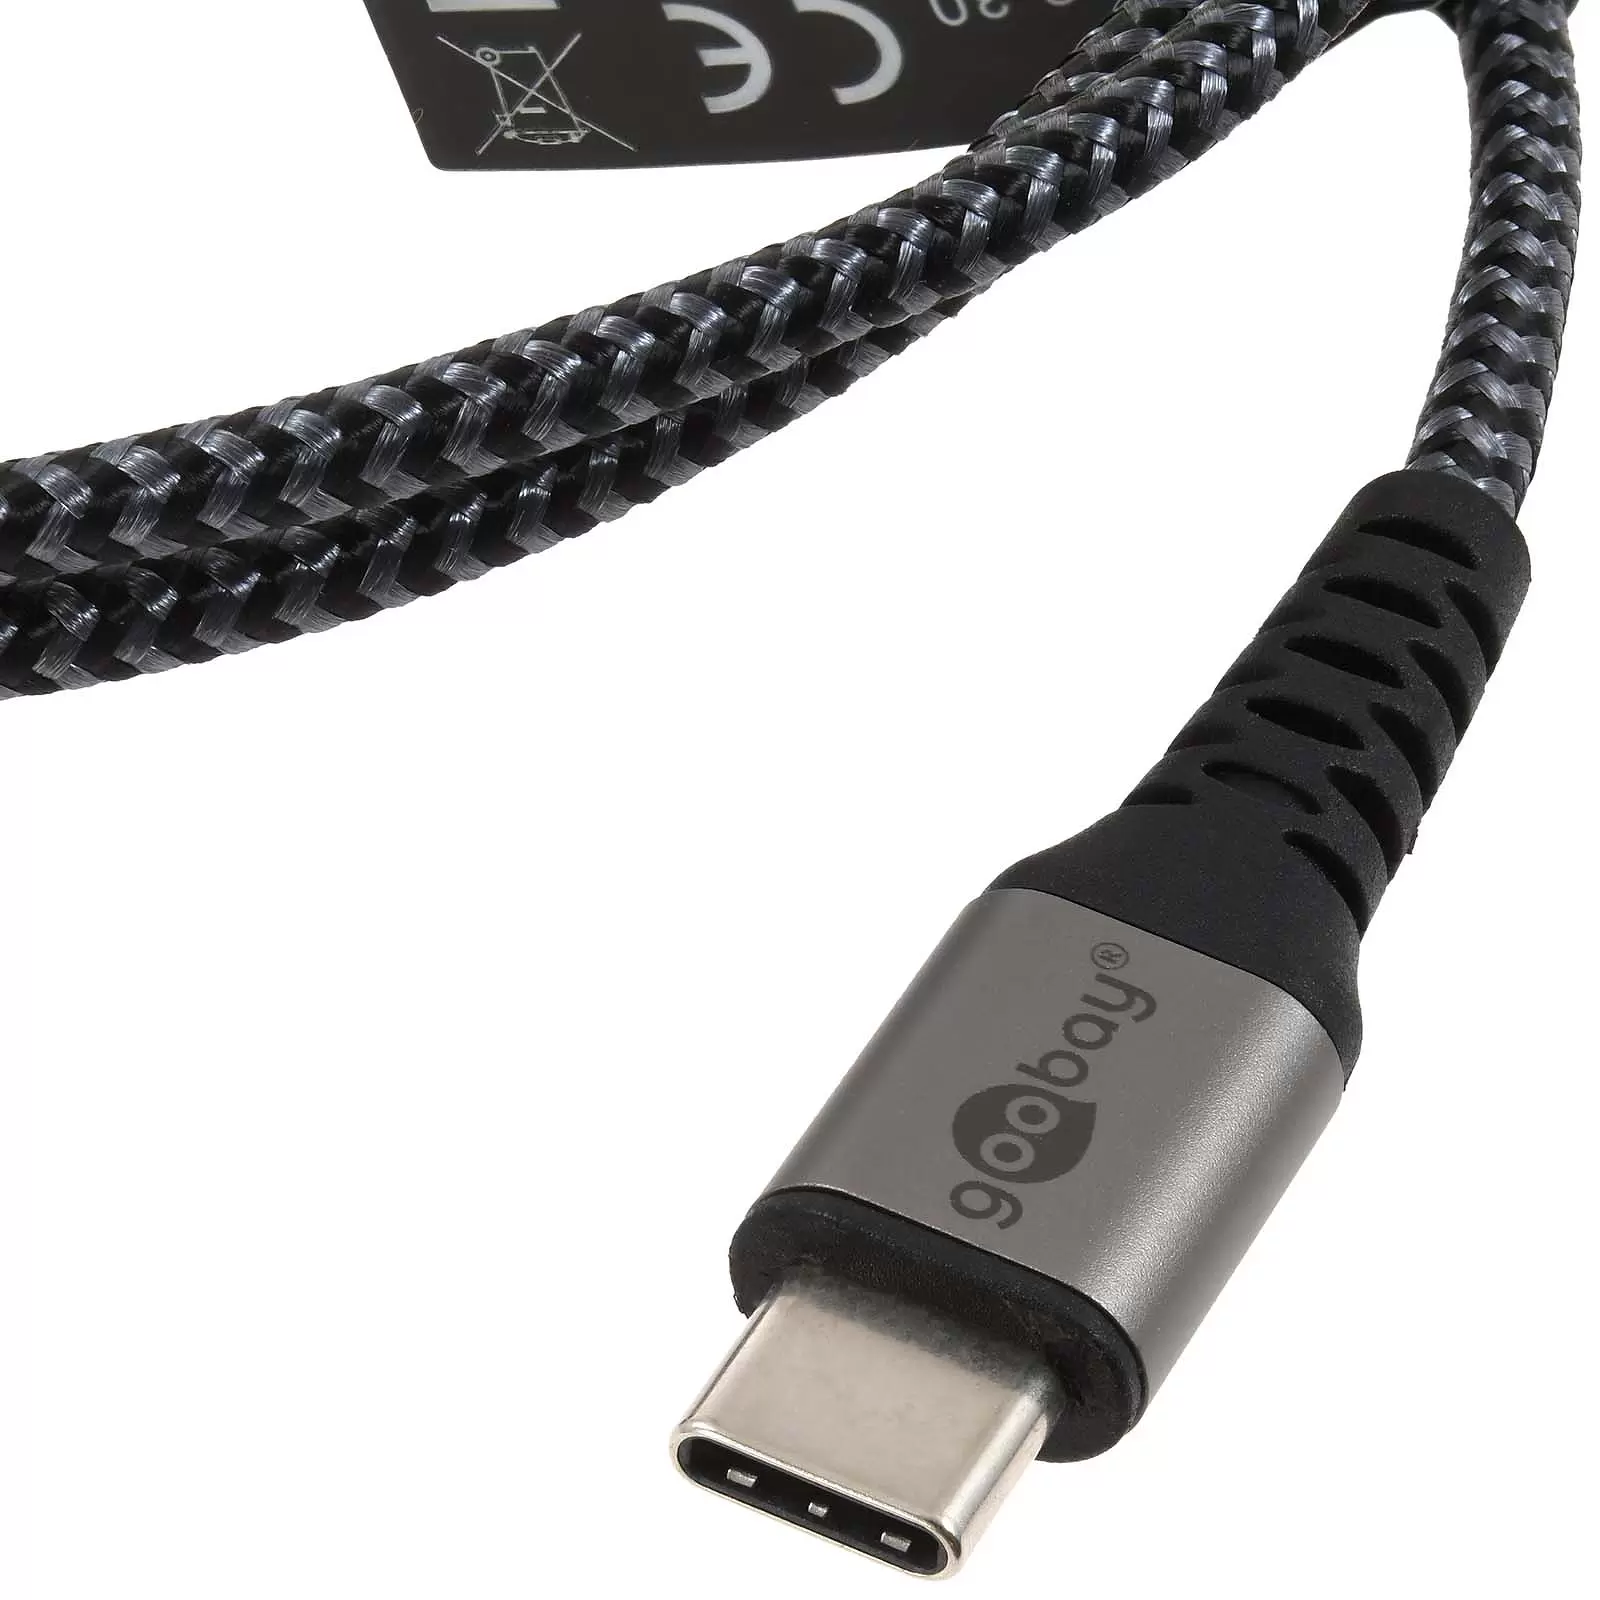 USB-C-auf-USB-C Textilkabel mit Metallsteckern spacegrau/silber, 0,5 m, 49301